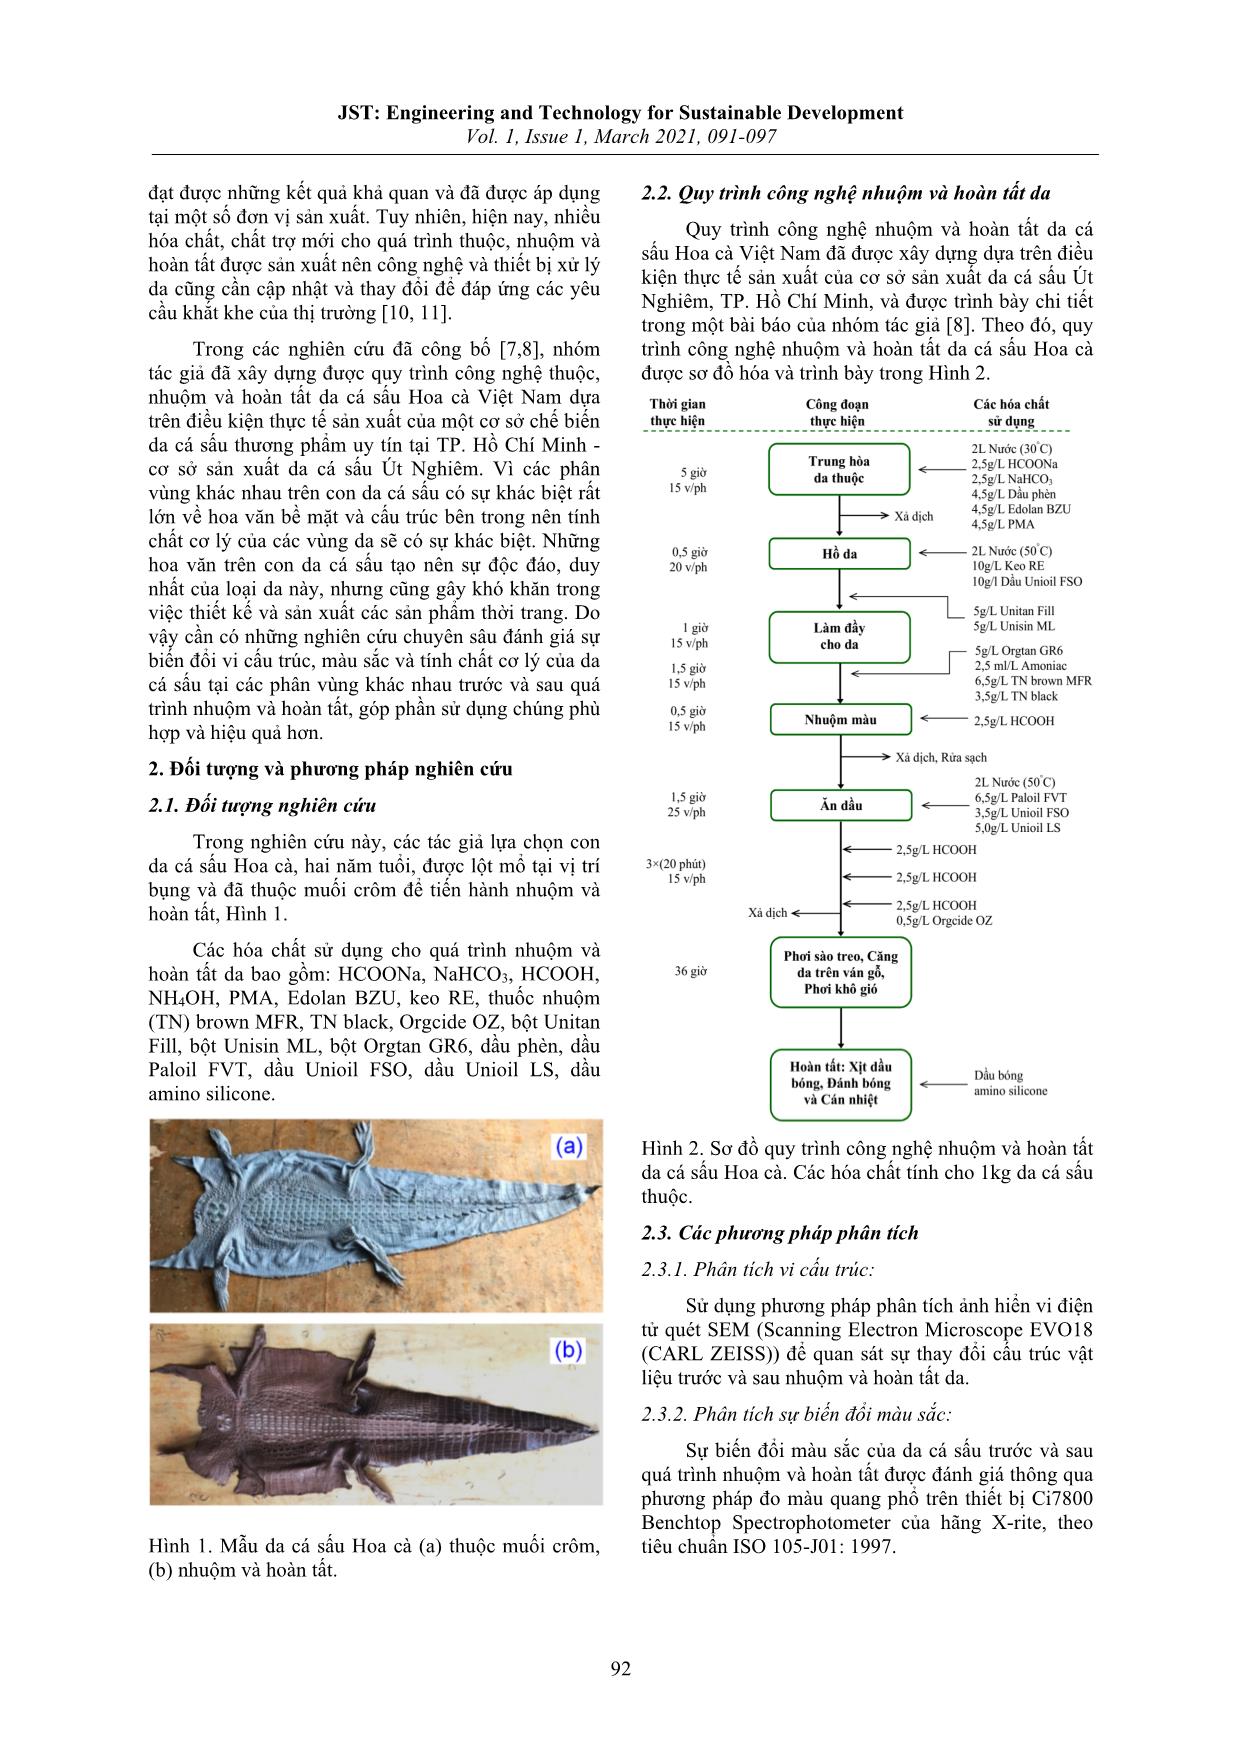 Nghiên cứu sự biến đổi màu sắc, vi cấu trúc và các tính chất cơ lý của da cá sấu Hoa cà trước và sau khi nhuộm trang 2